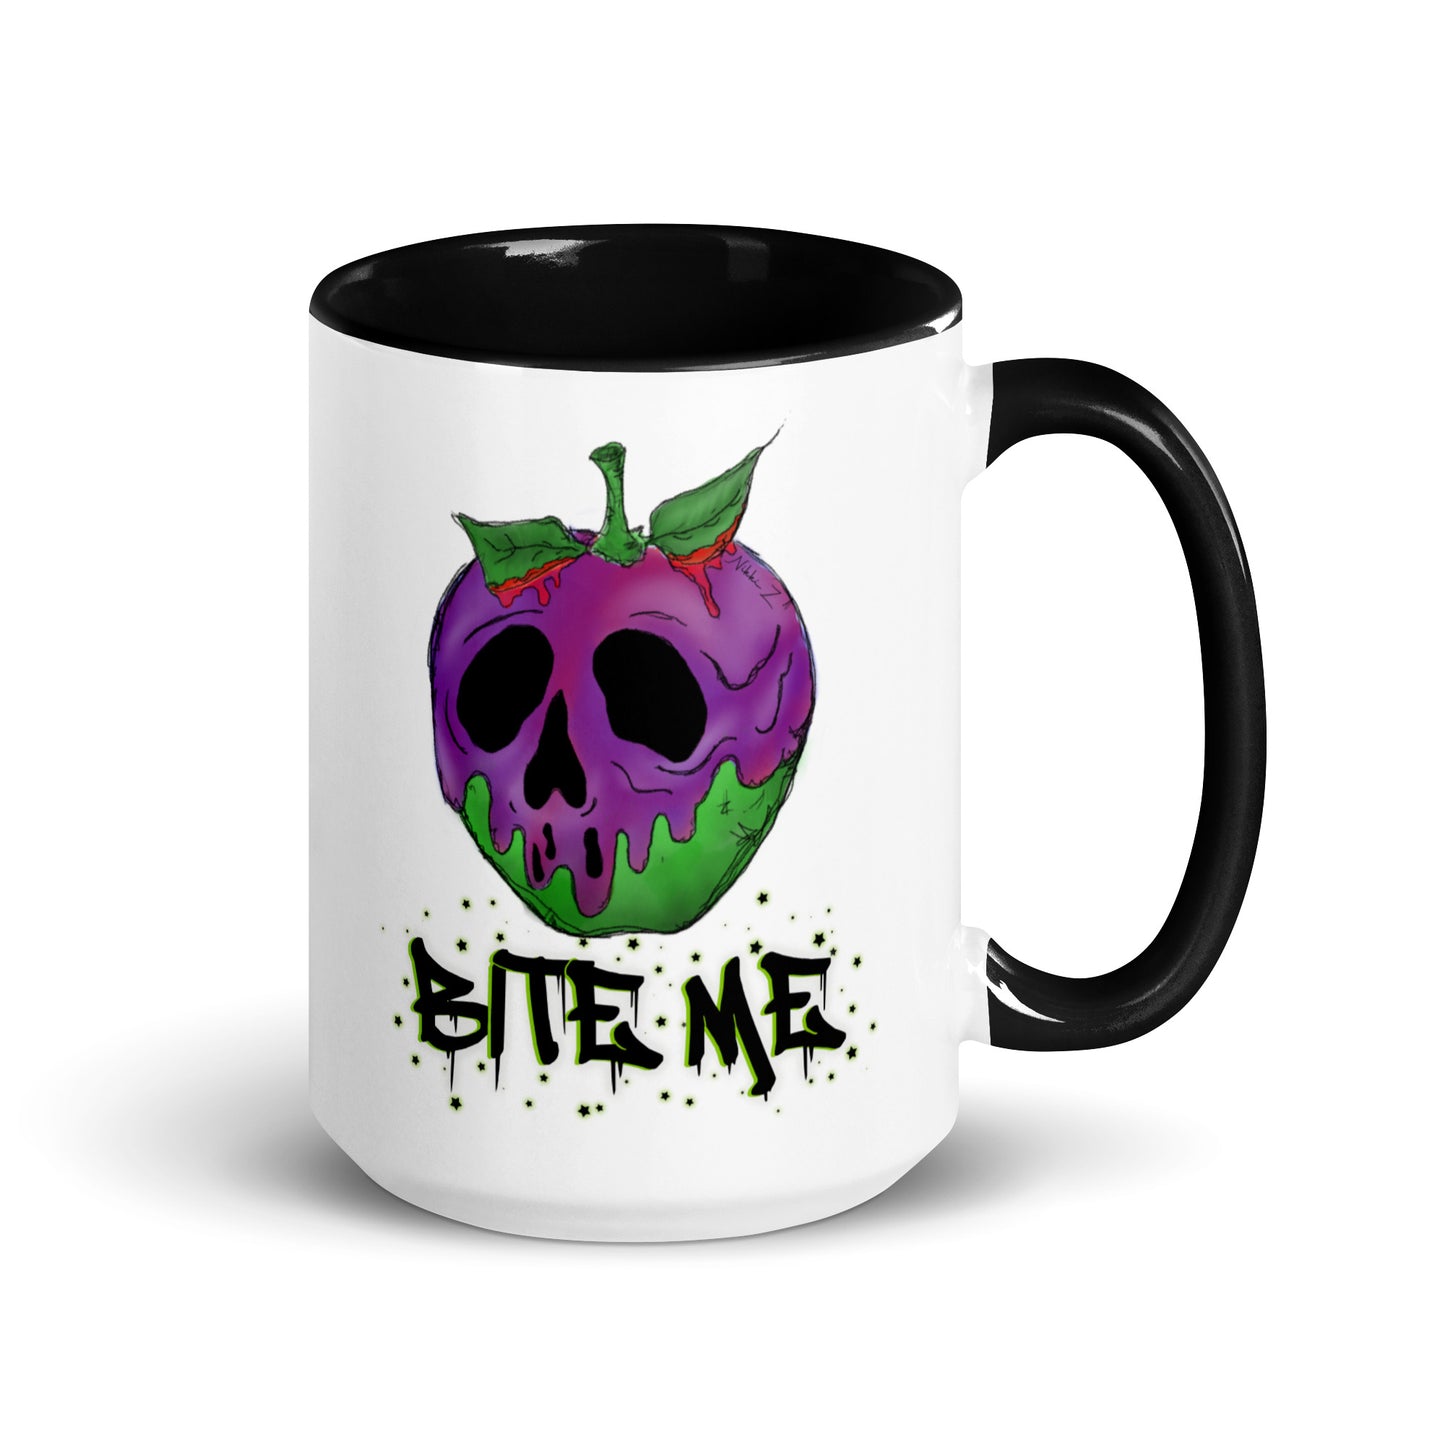 Bite Me Mug